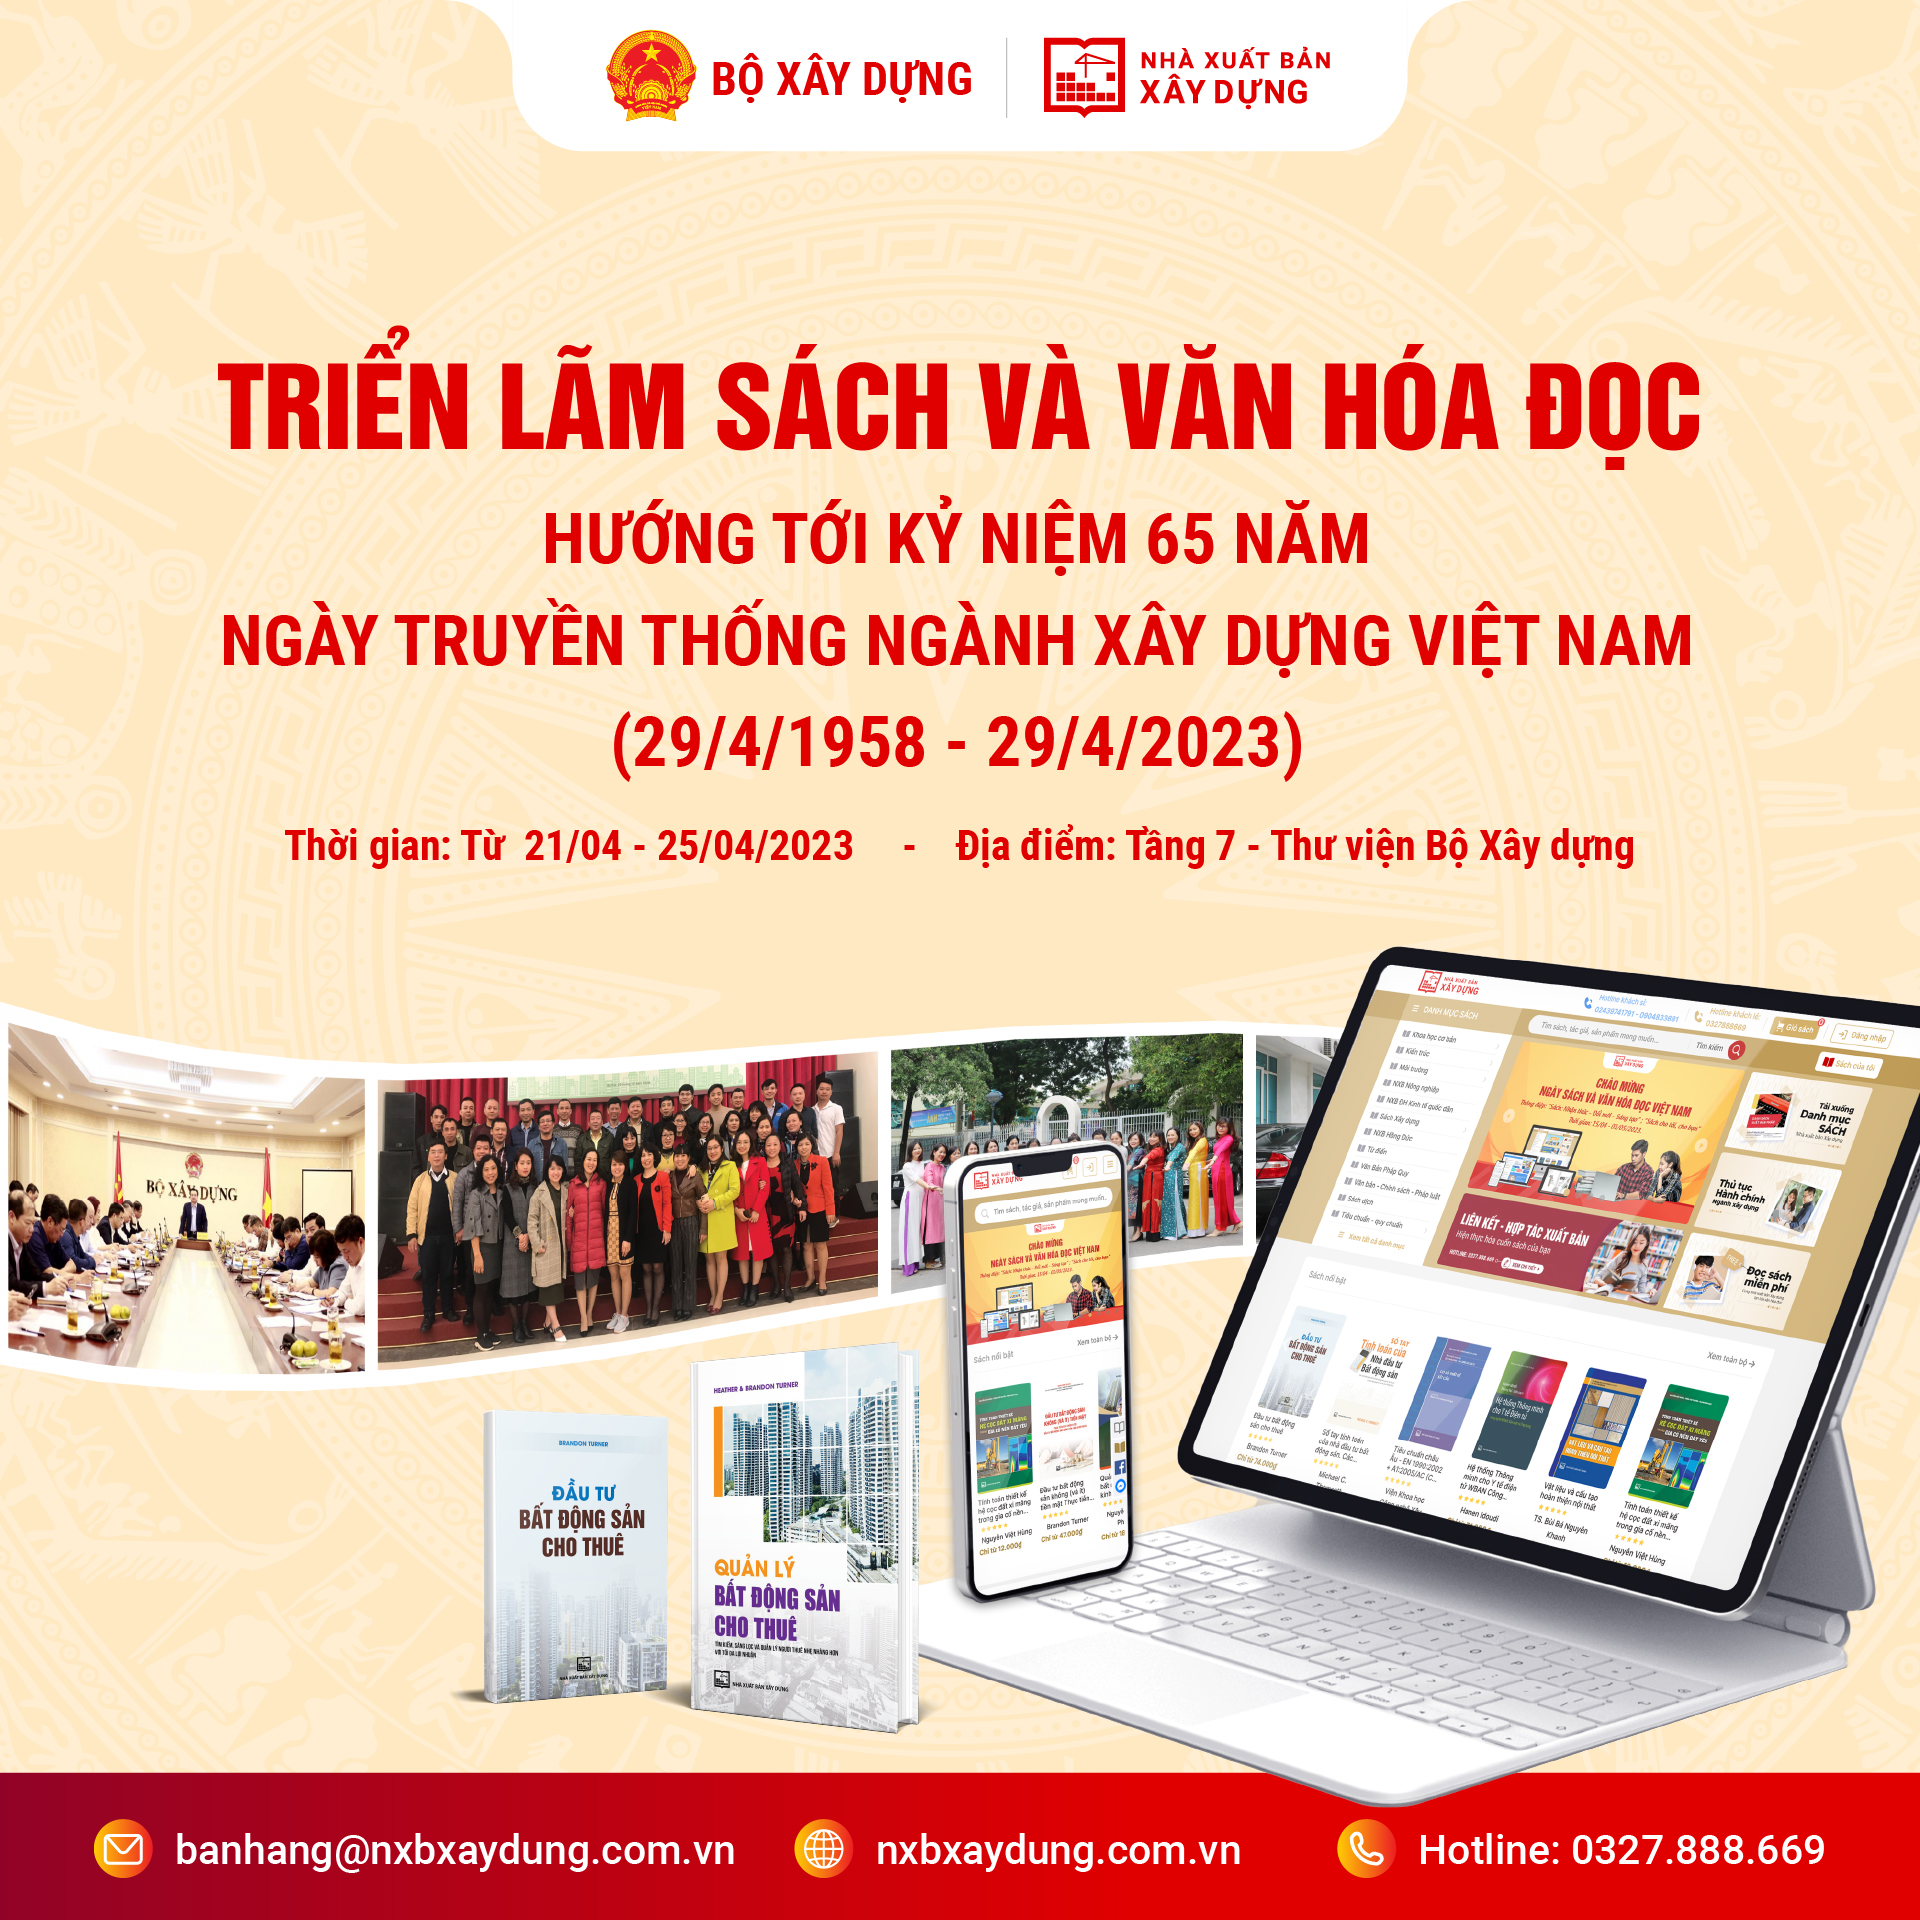 📚📖 Ngày Sách và Văn hóa đọc Việt Nam lần thứ 2 năm 2023 - Bộ Xây dựng 📖📚